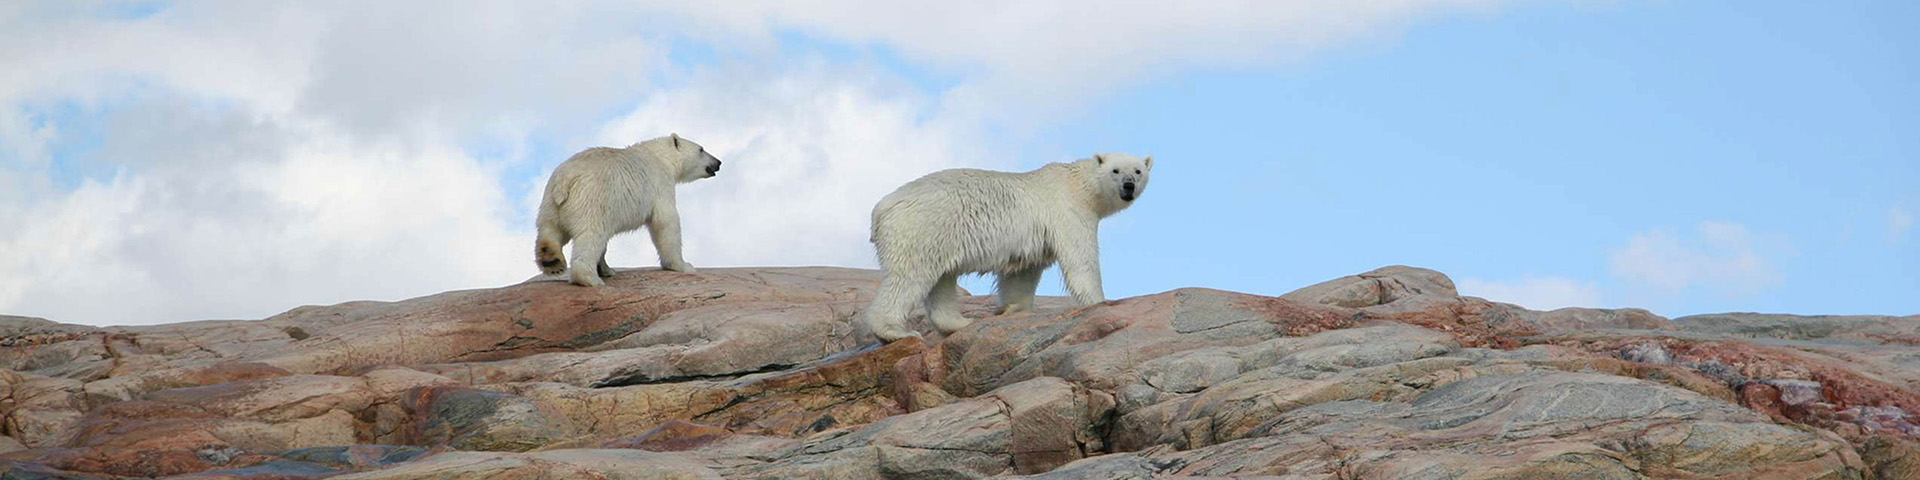 Deux ours polaires marchant dans un paysage rocheux. 